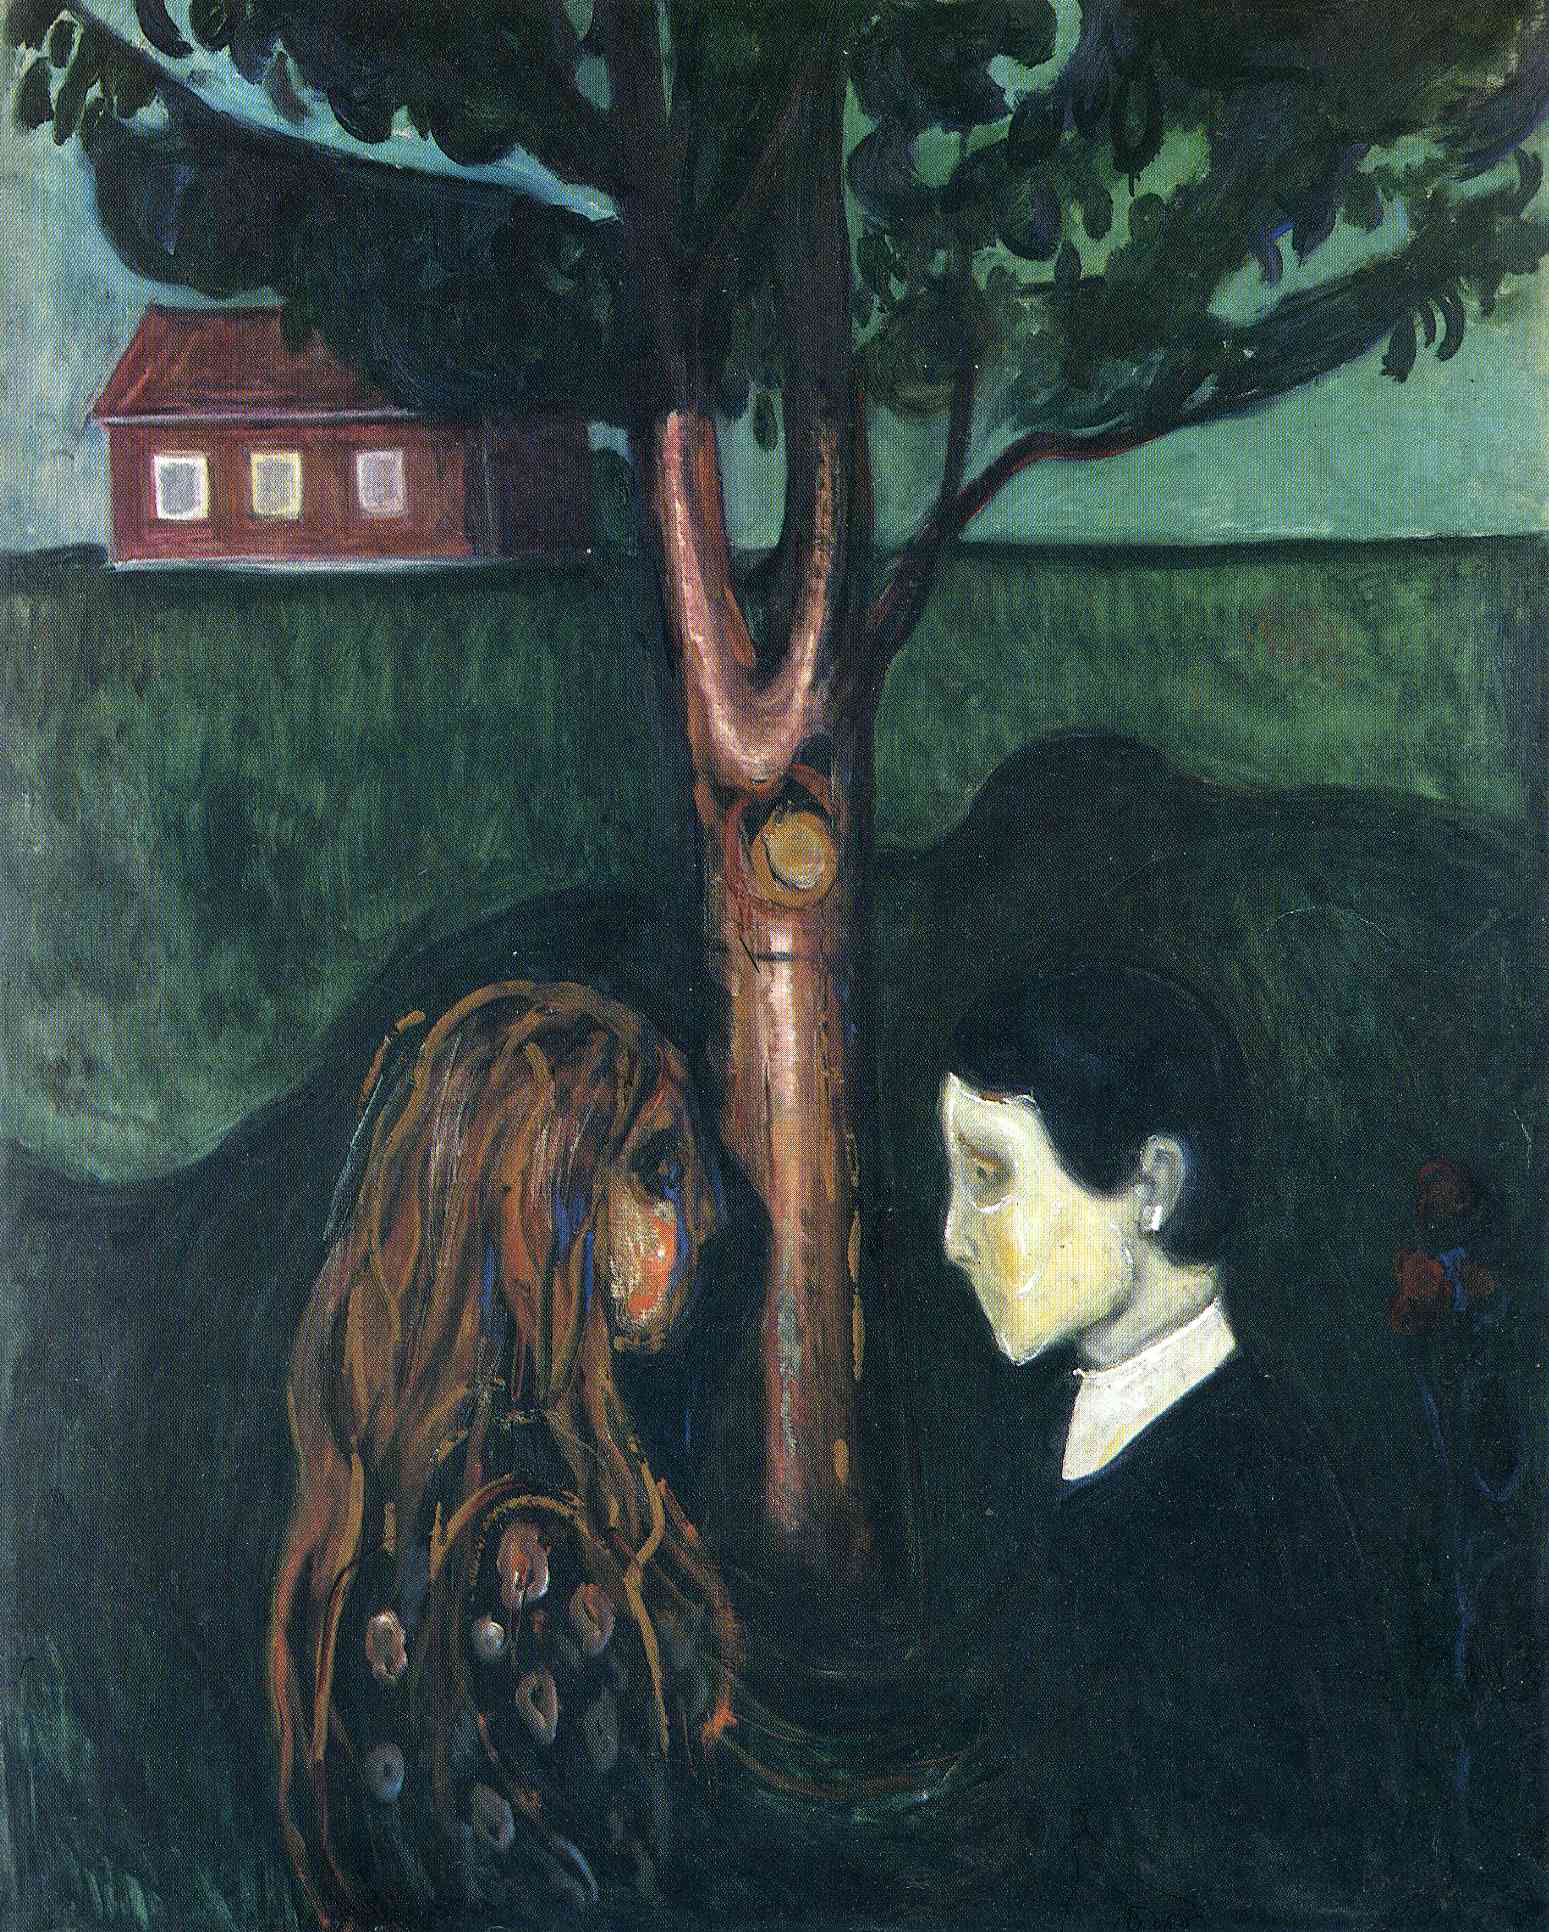 Göze Göz by Edvard Munch - 1894 - 136 x 110 cm 